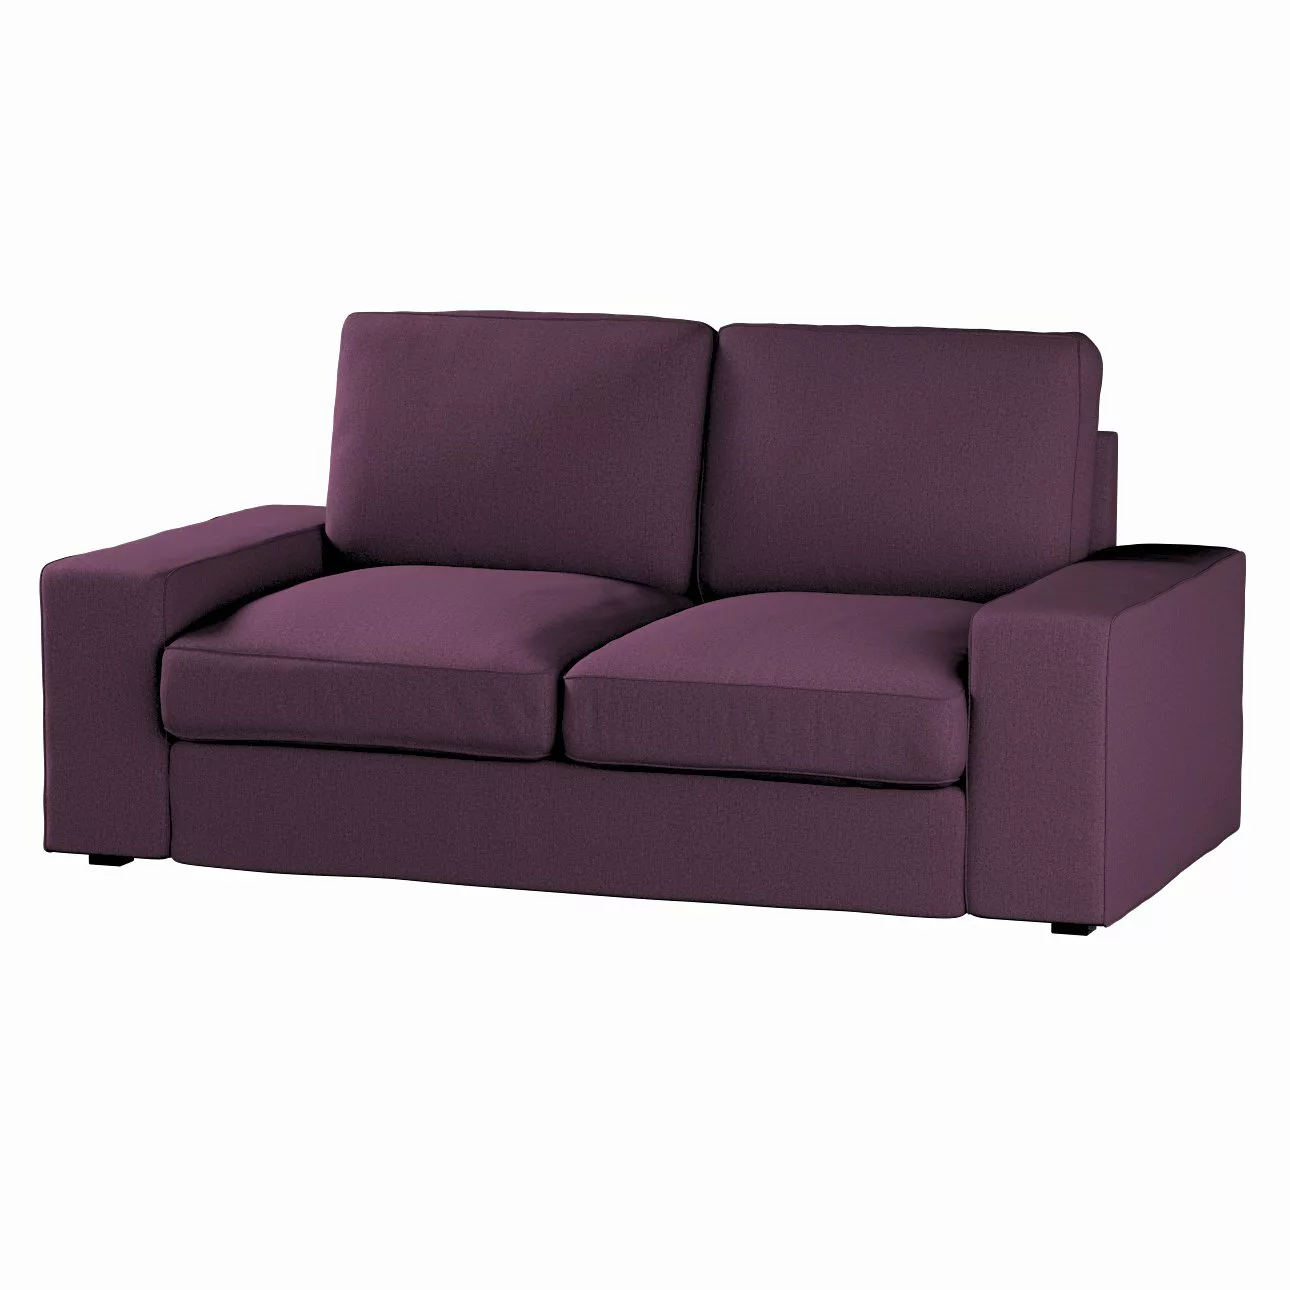 Bezug für Kivik 2-Sitzer Sofa, pflaume, Bezug für Sofa Kivik 2-Sitzer, Livi günstig online kaufen